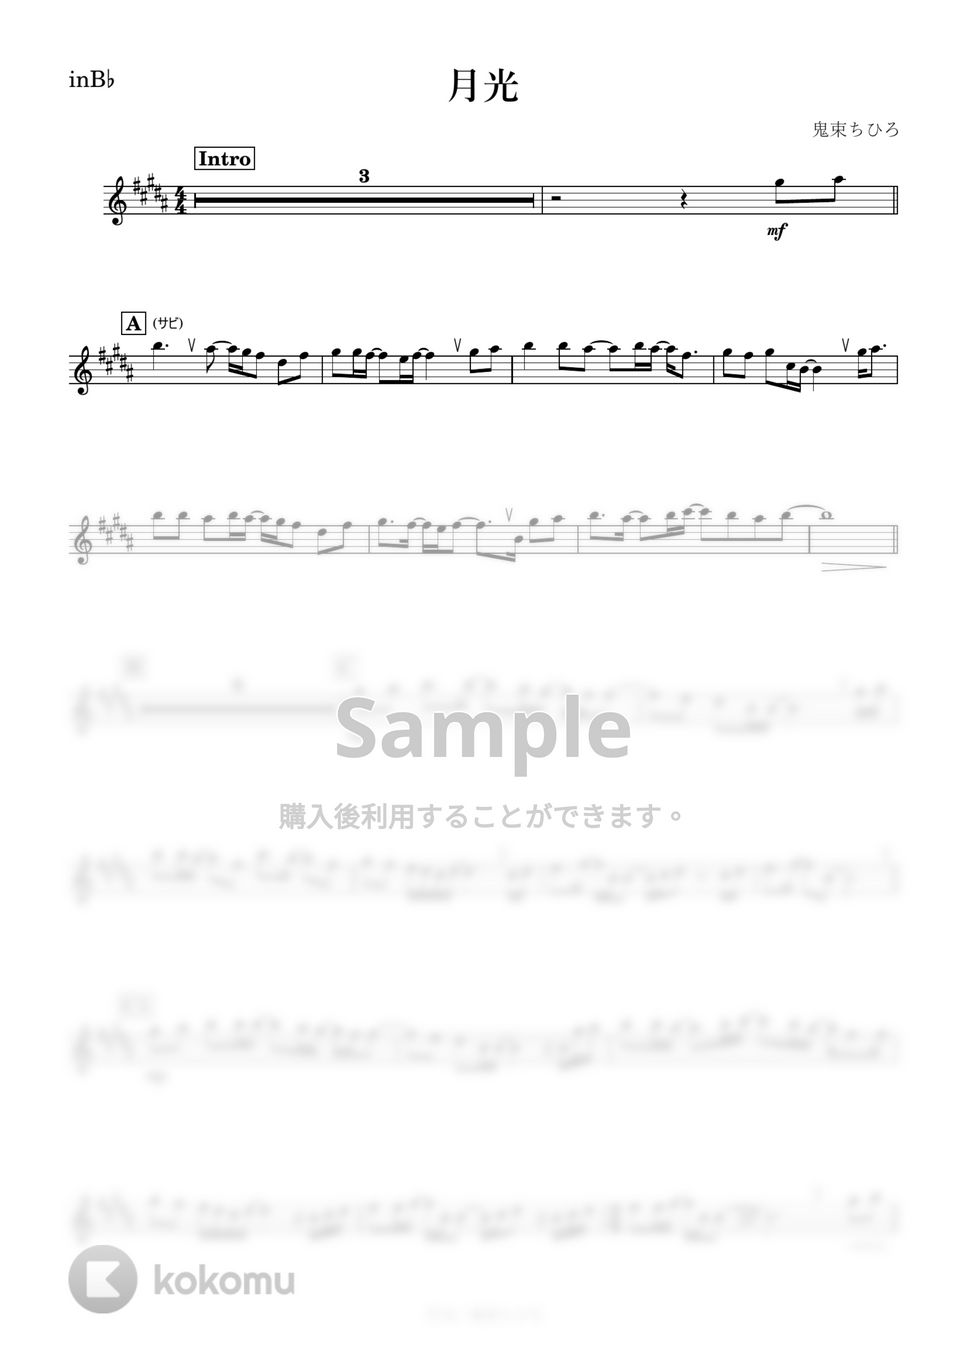 鬼束ちひろ - 月光 (B♭) by kanamusic